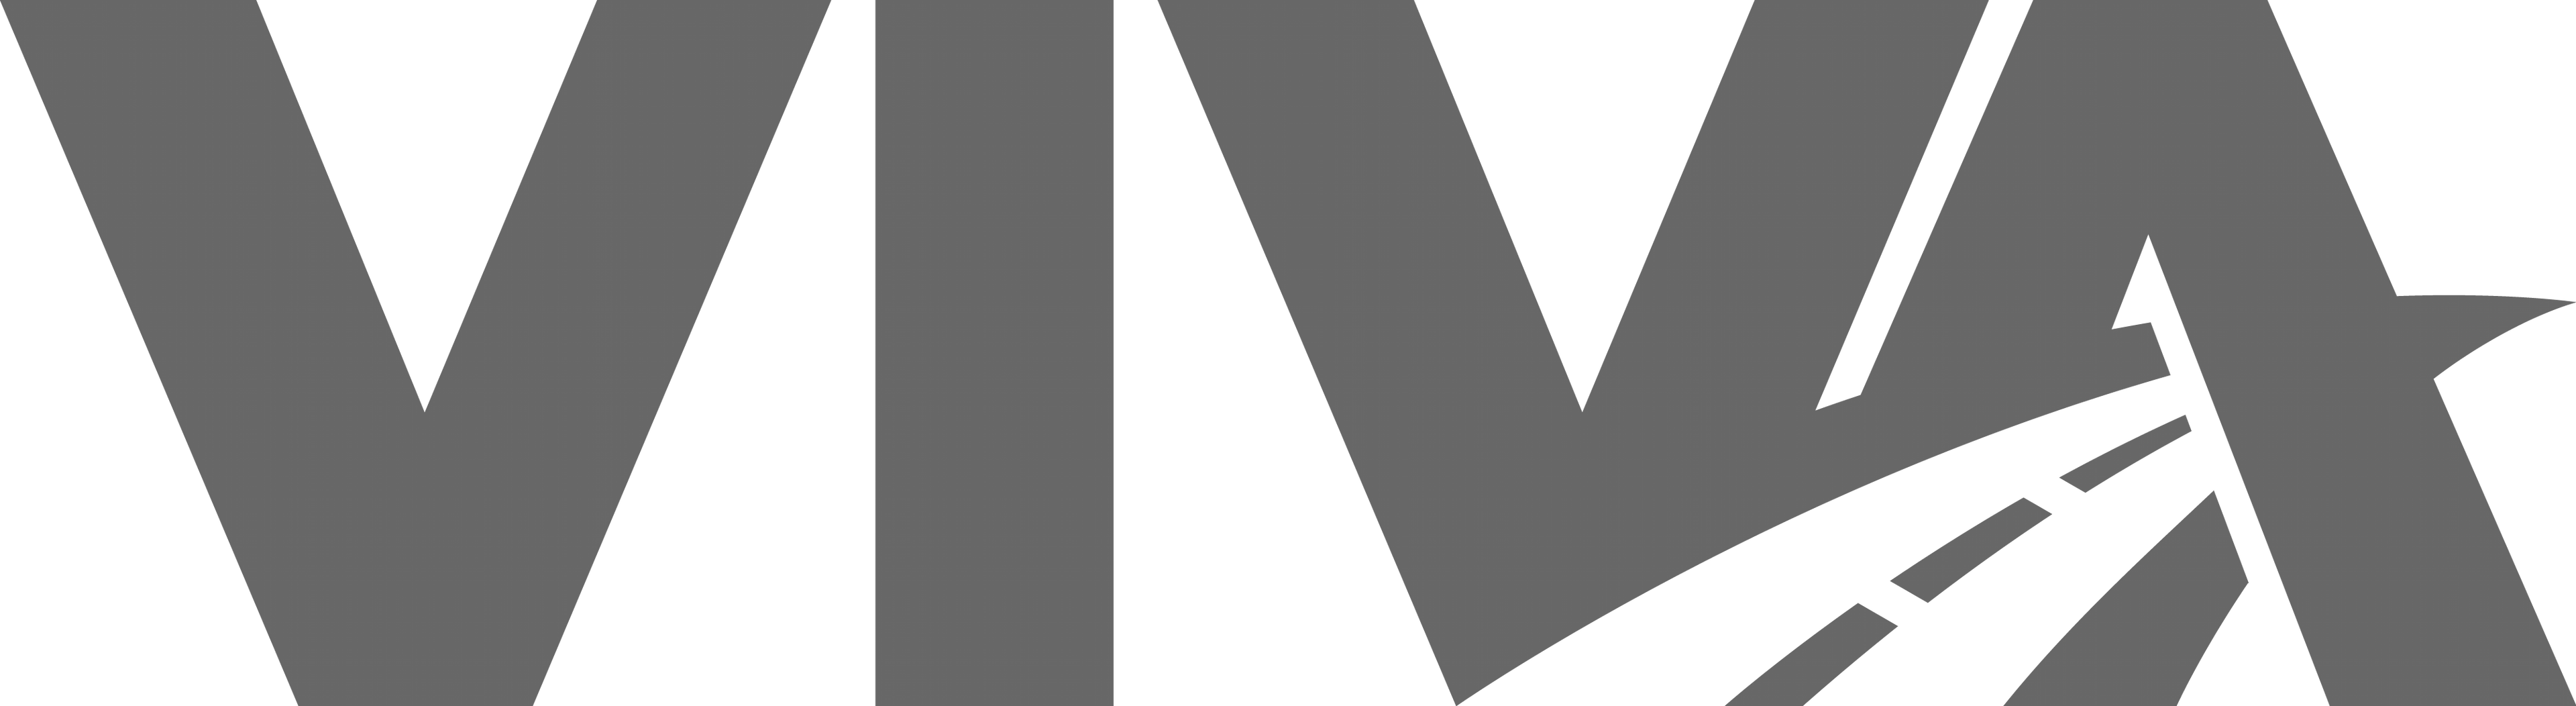 Viva Short Gray Logo